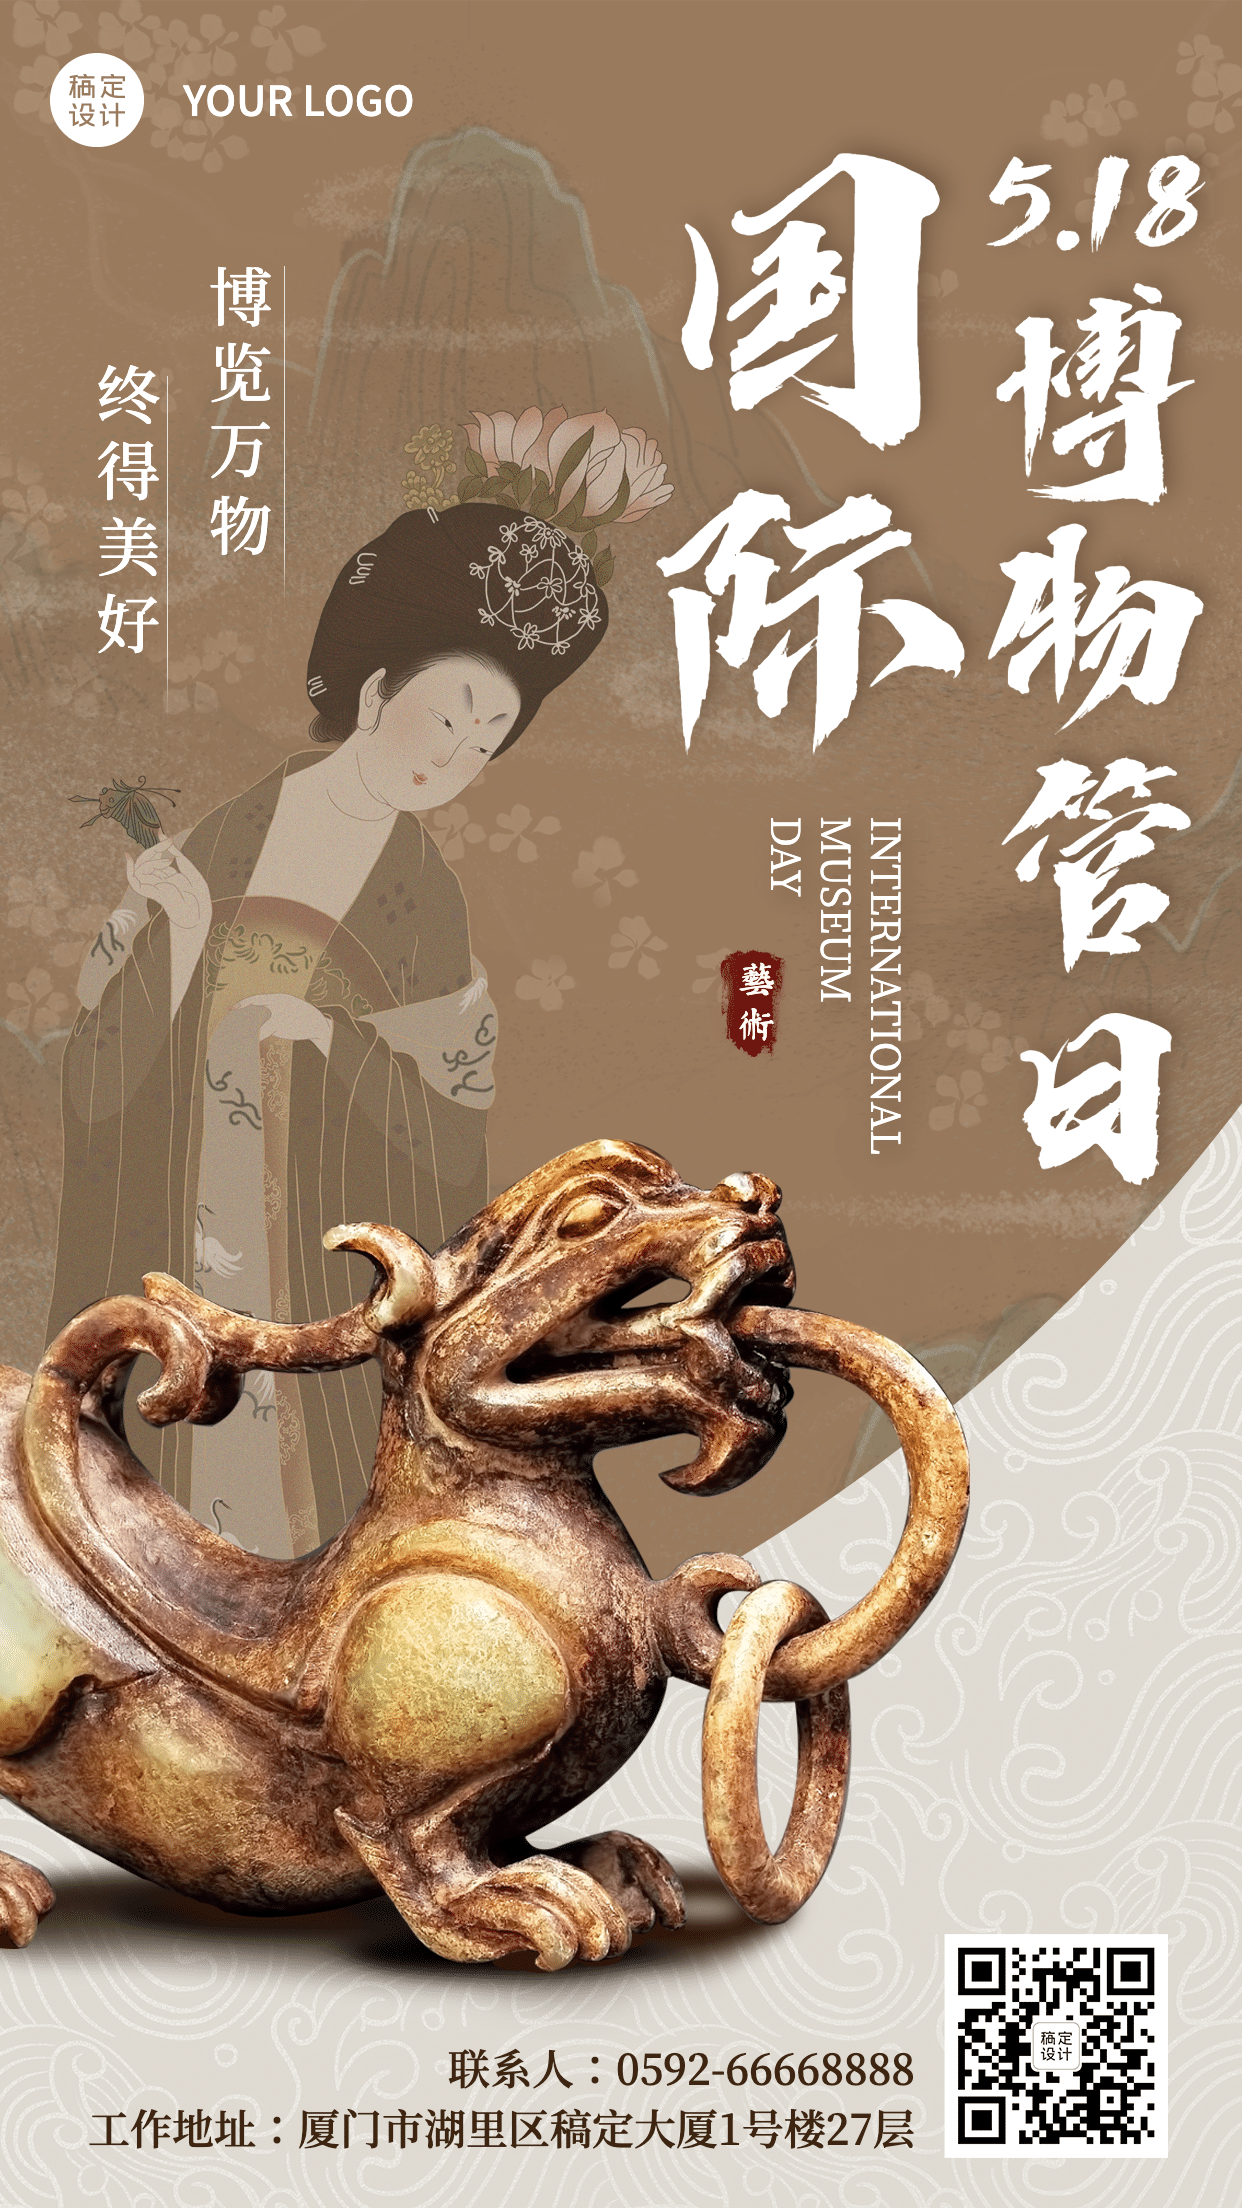 国际博物馆日中国文化传承手机海报预览效果